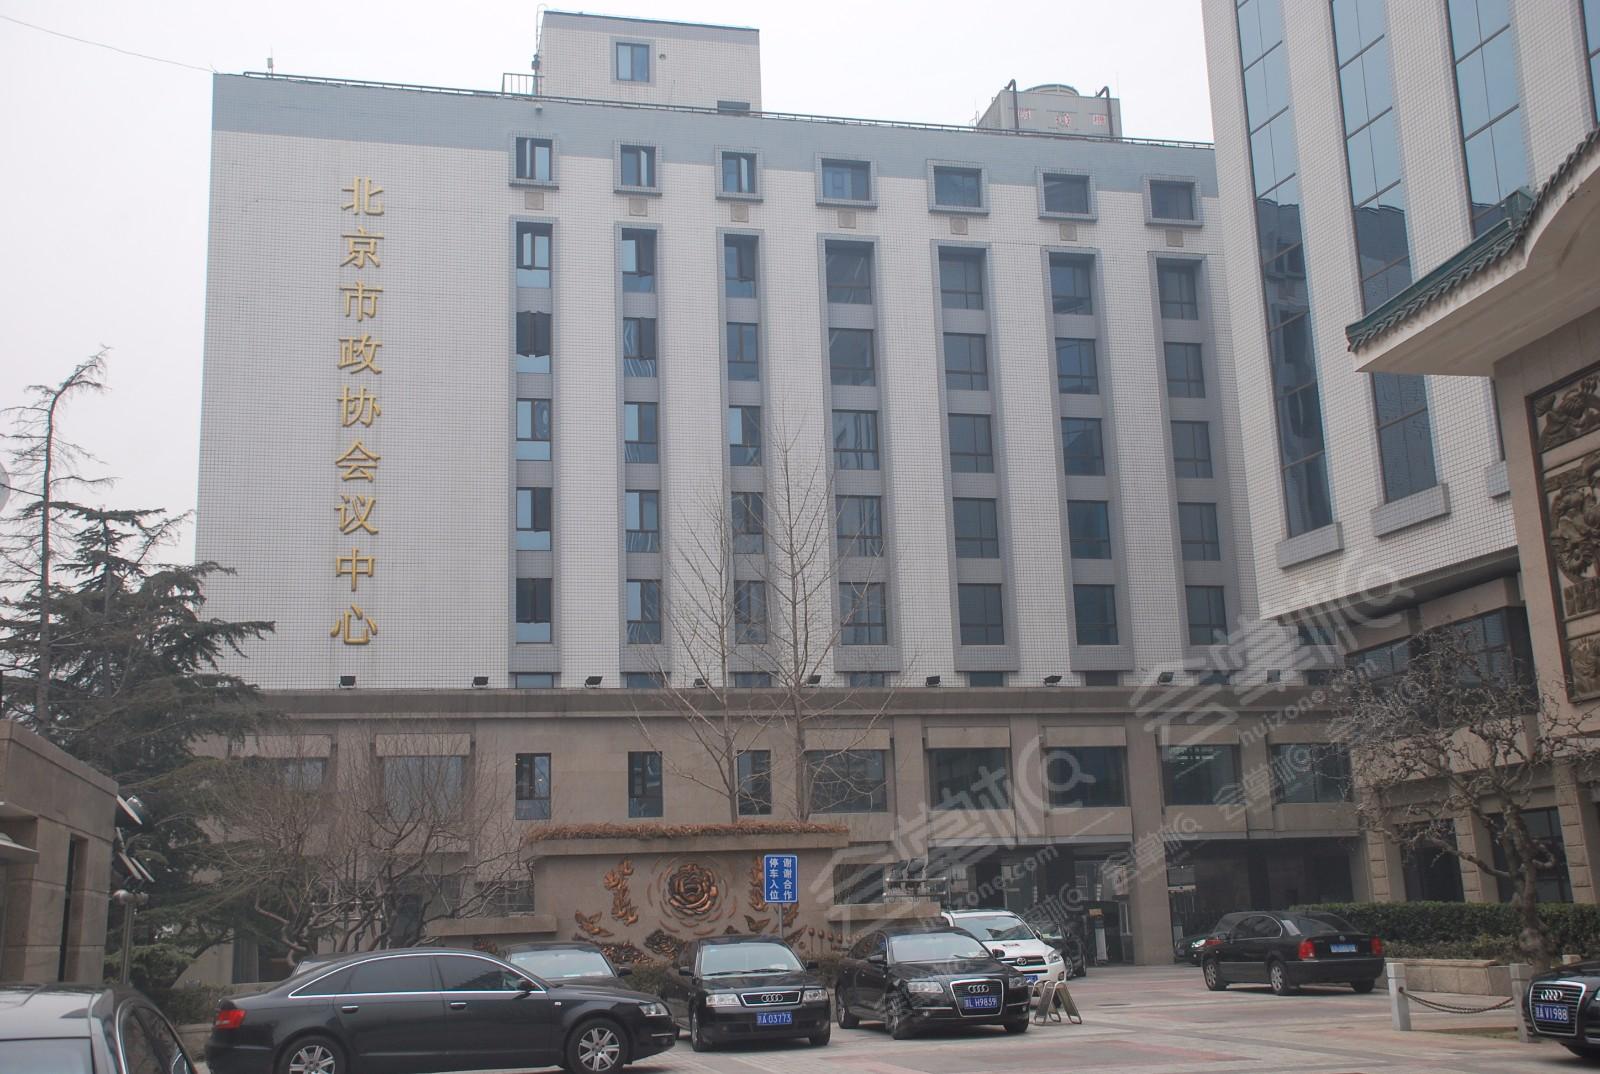 北京市政协会议中心